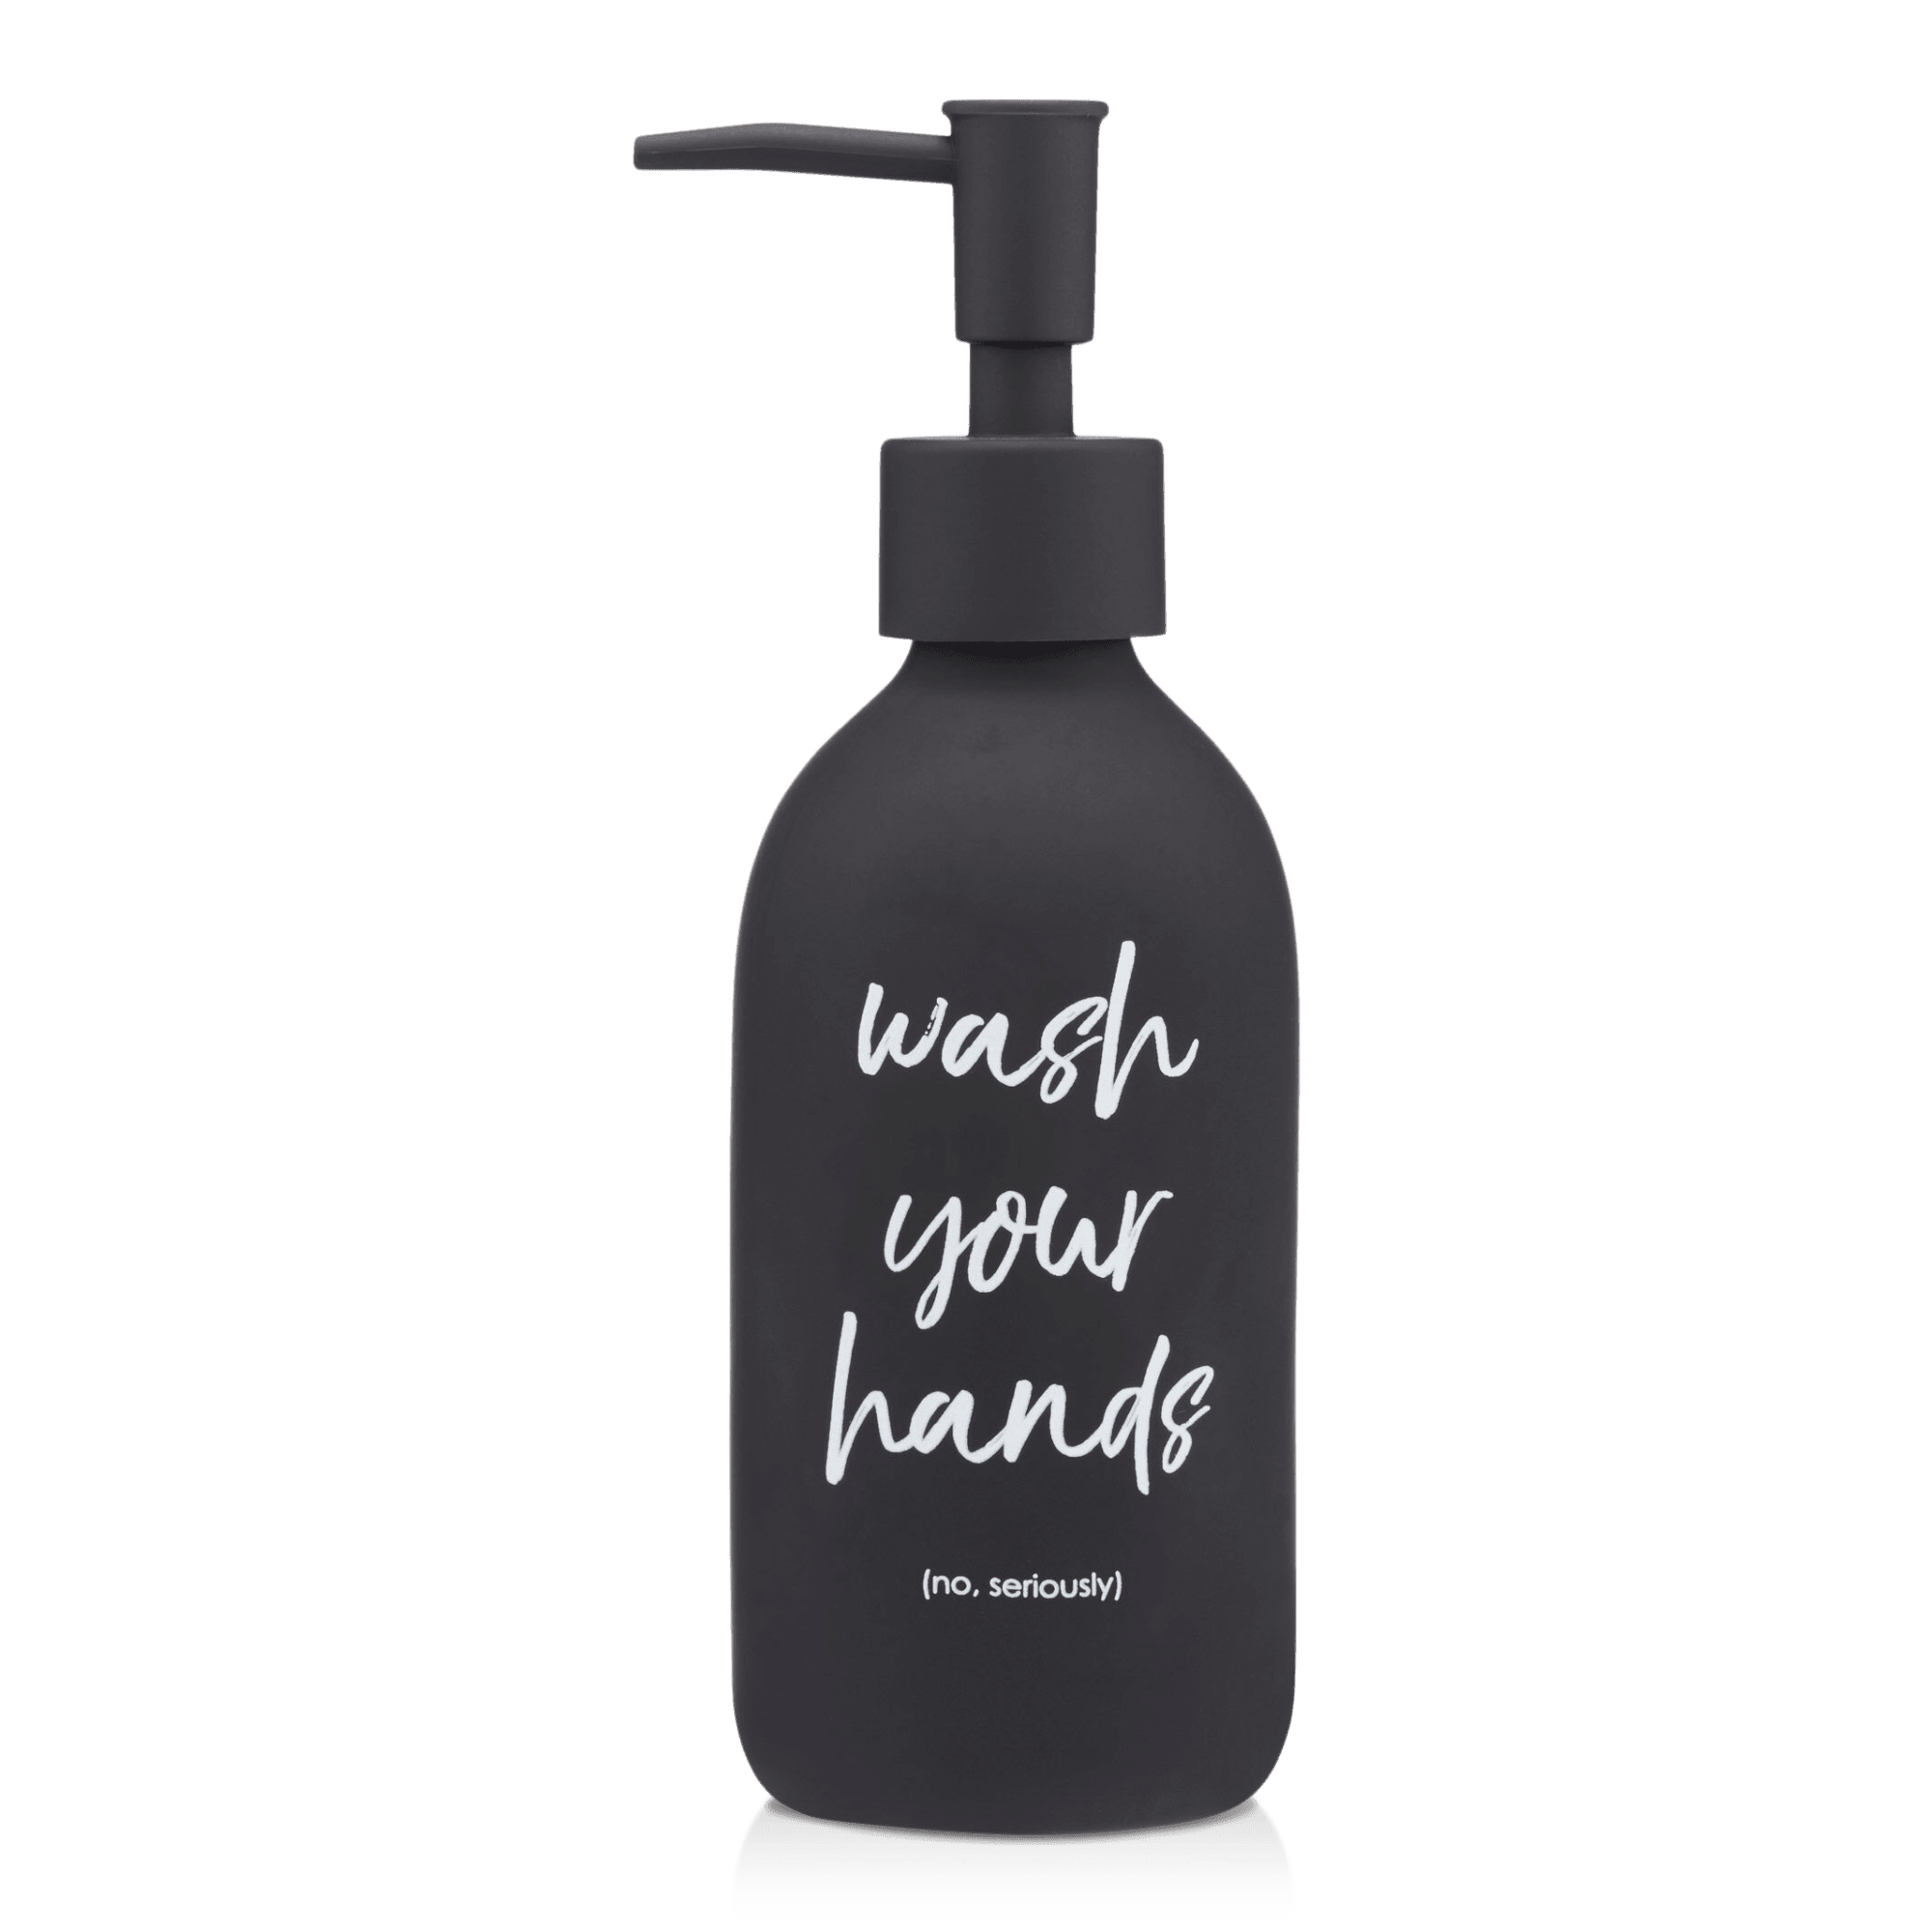 Distributeur de savon avec typographie